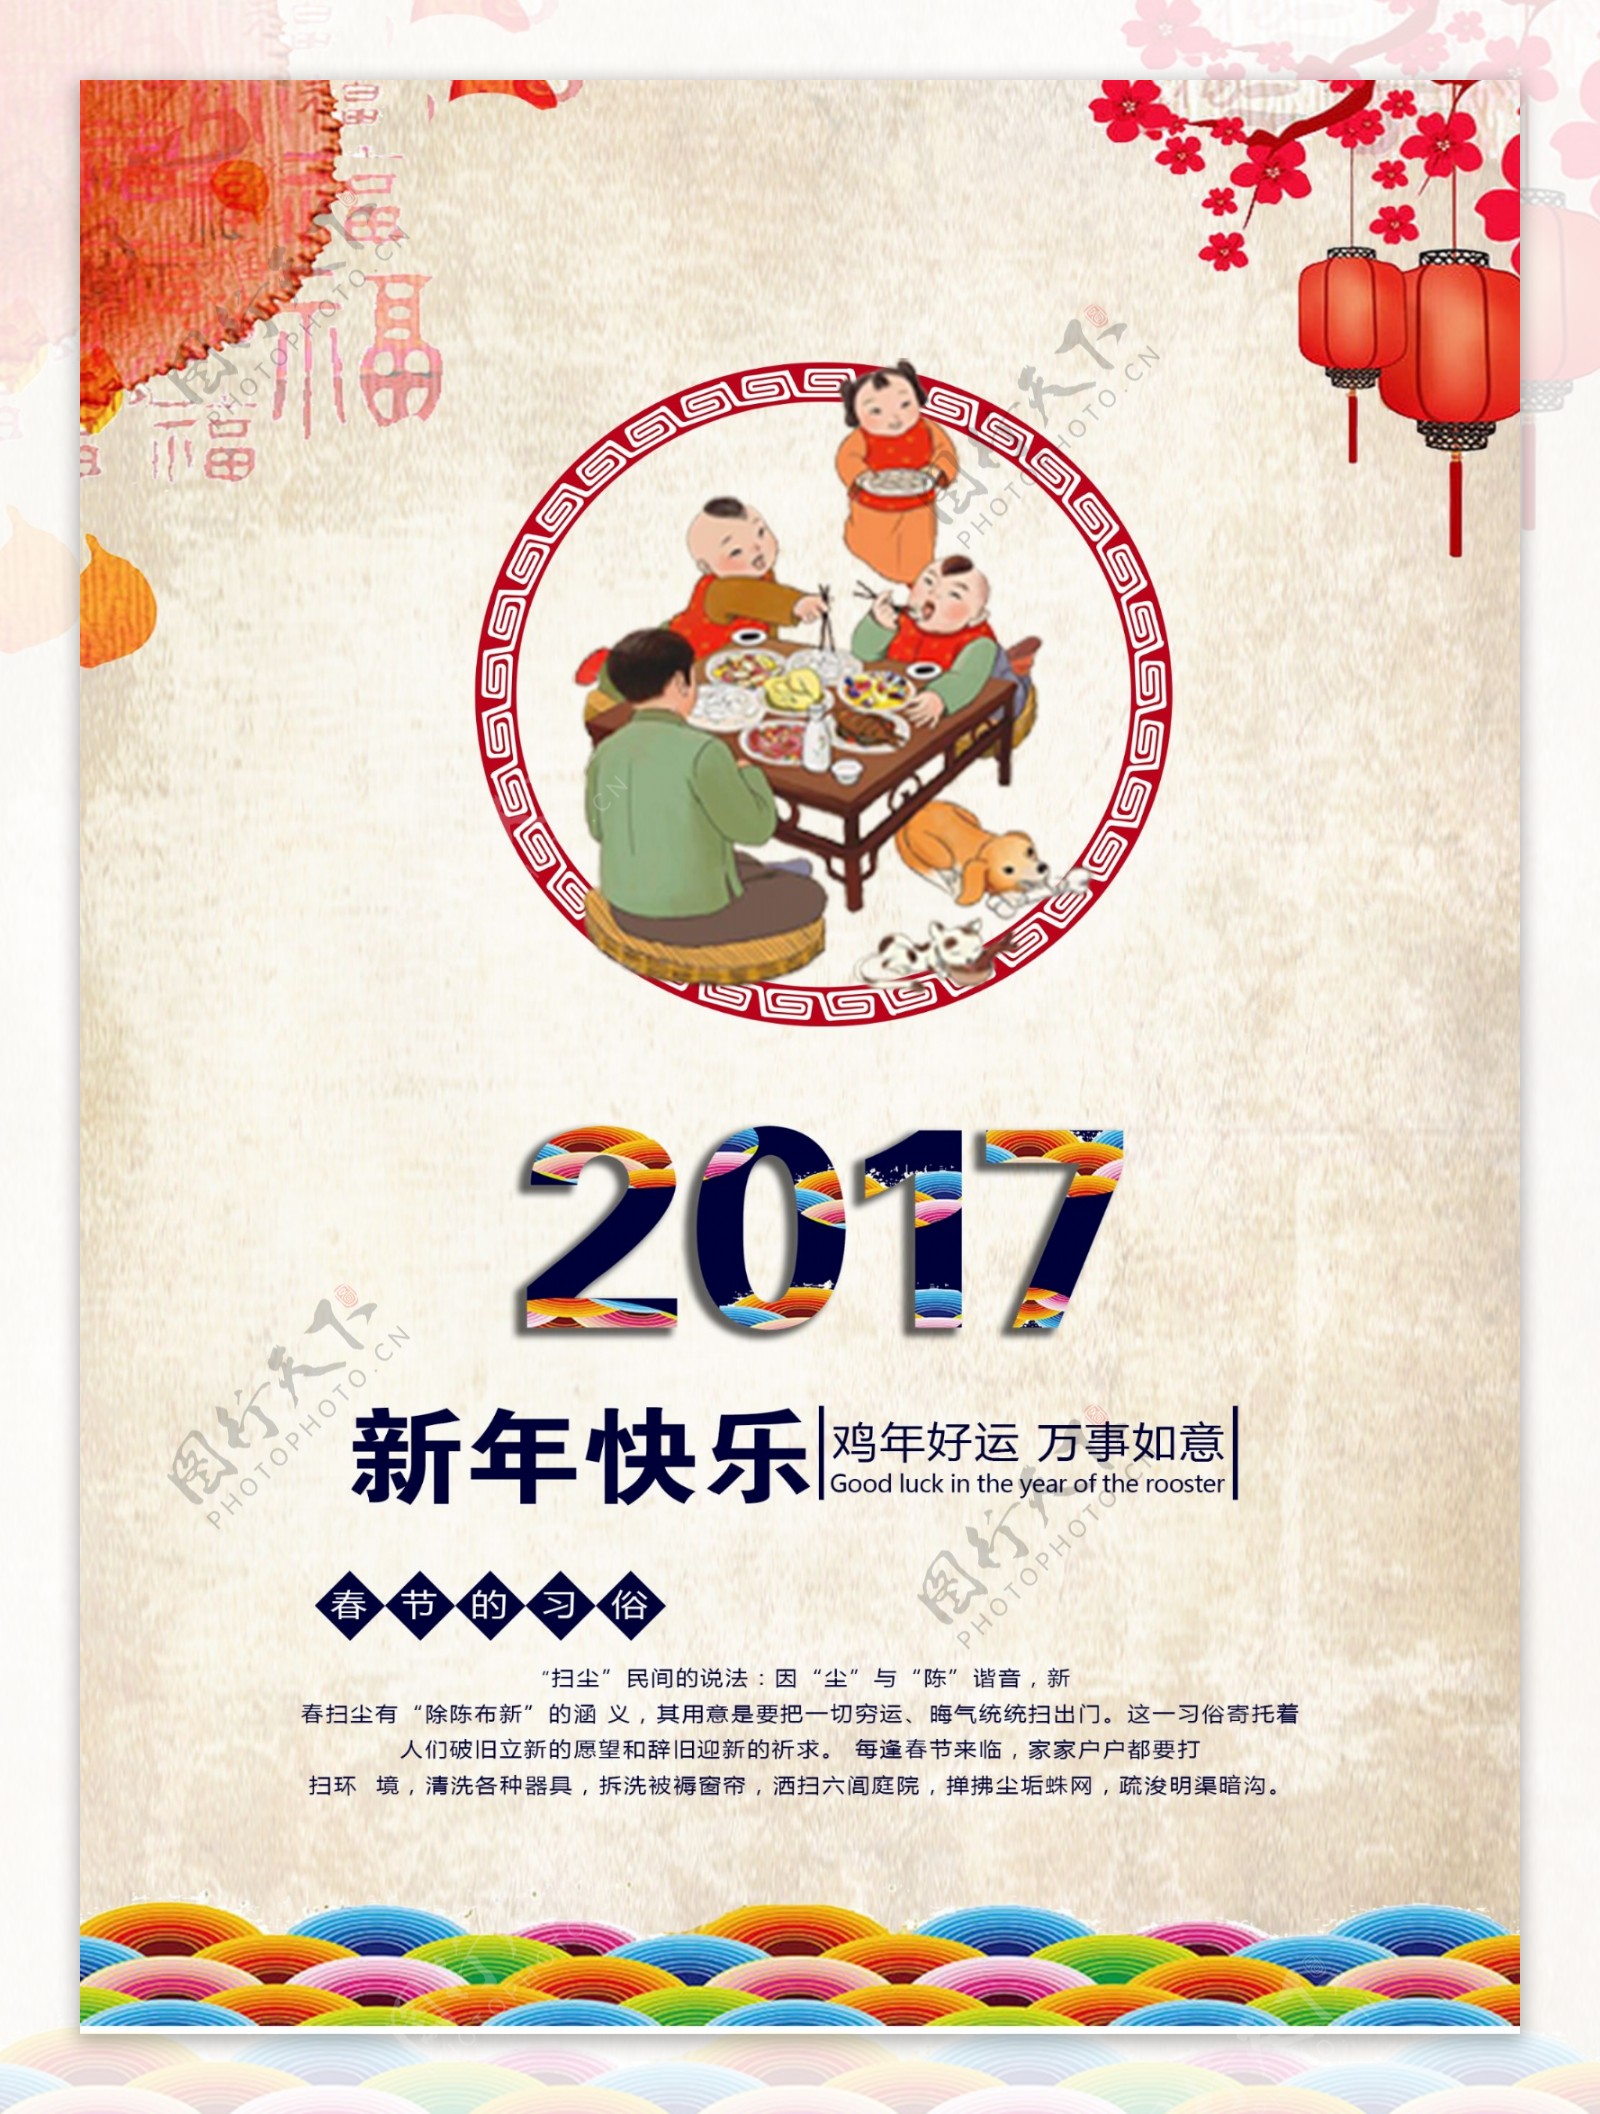 2017春节新年快乐